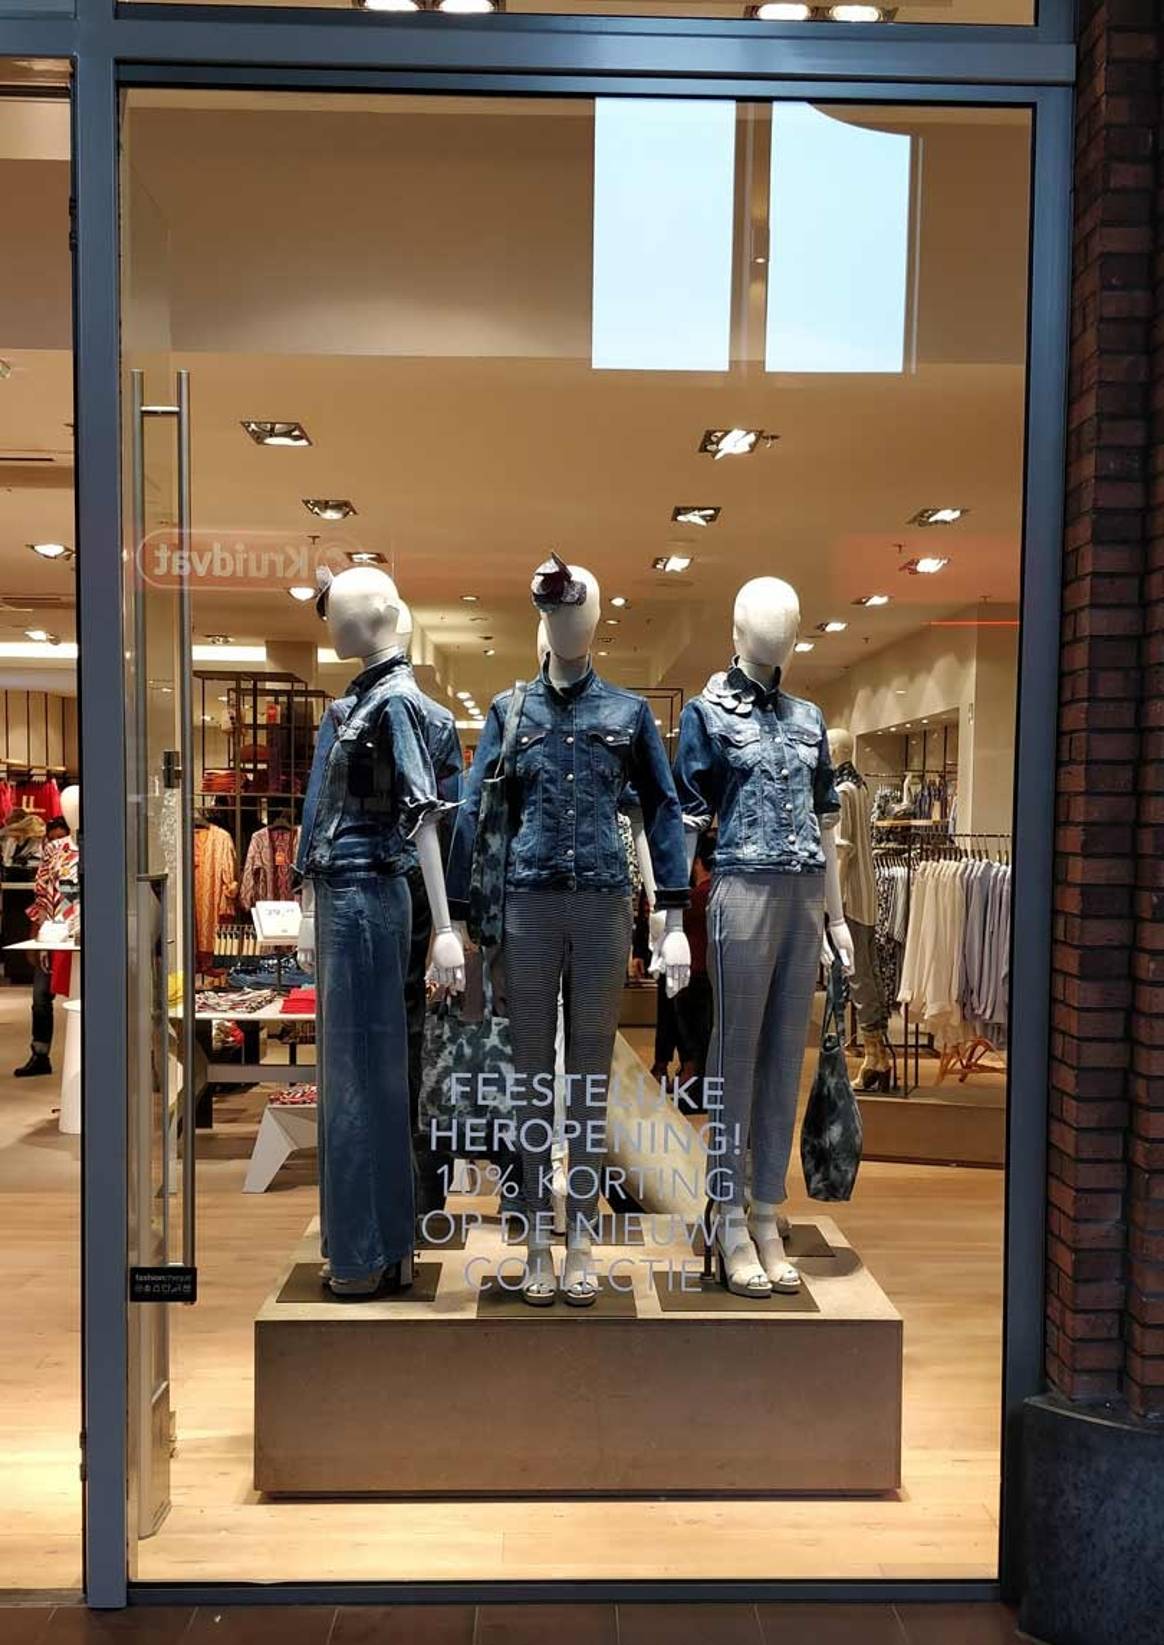 Didi vernieuwt winkel in Hoofddorp volgens modernere richtlijnen van het merk